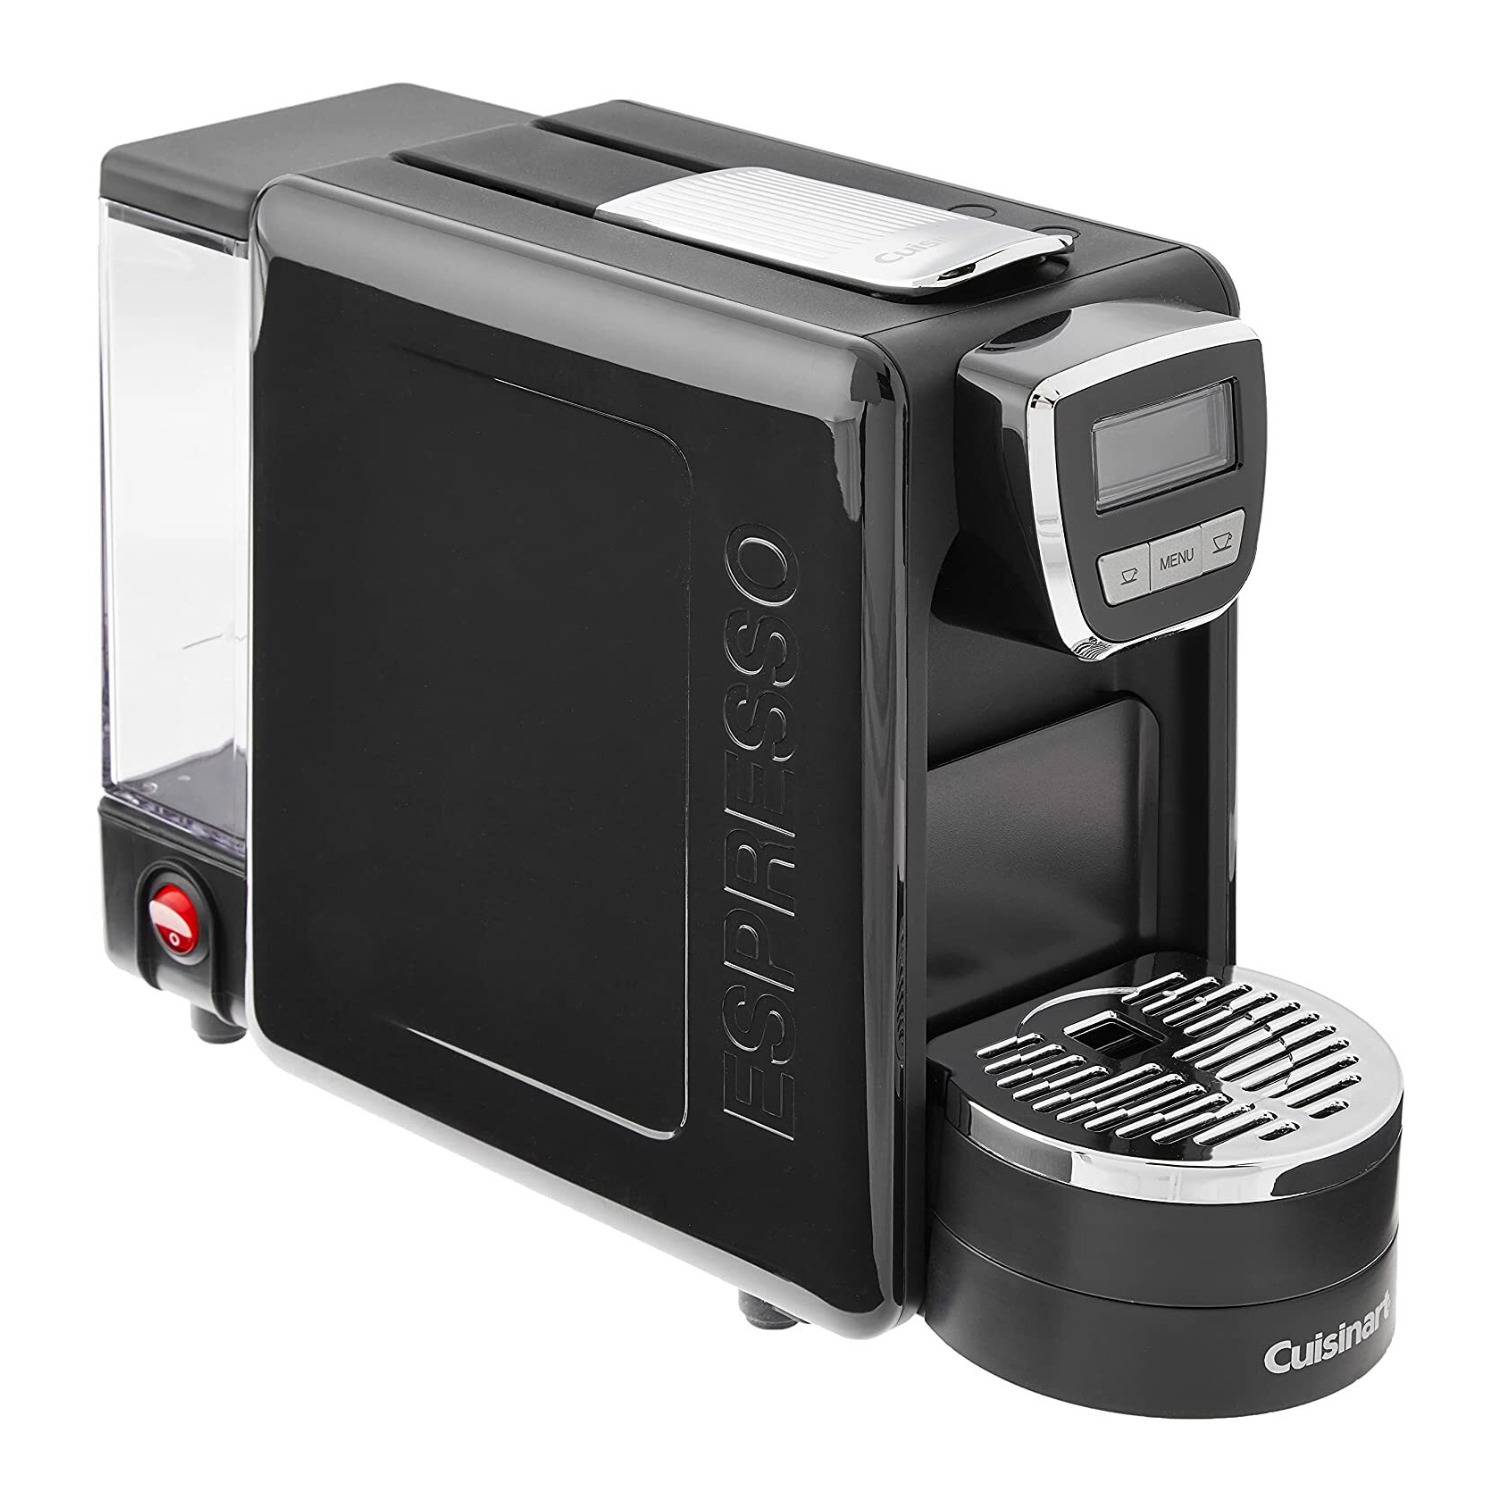 Cuisinart Espresso Defined Stainless Steel Espresso Machine (Black)